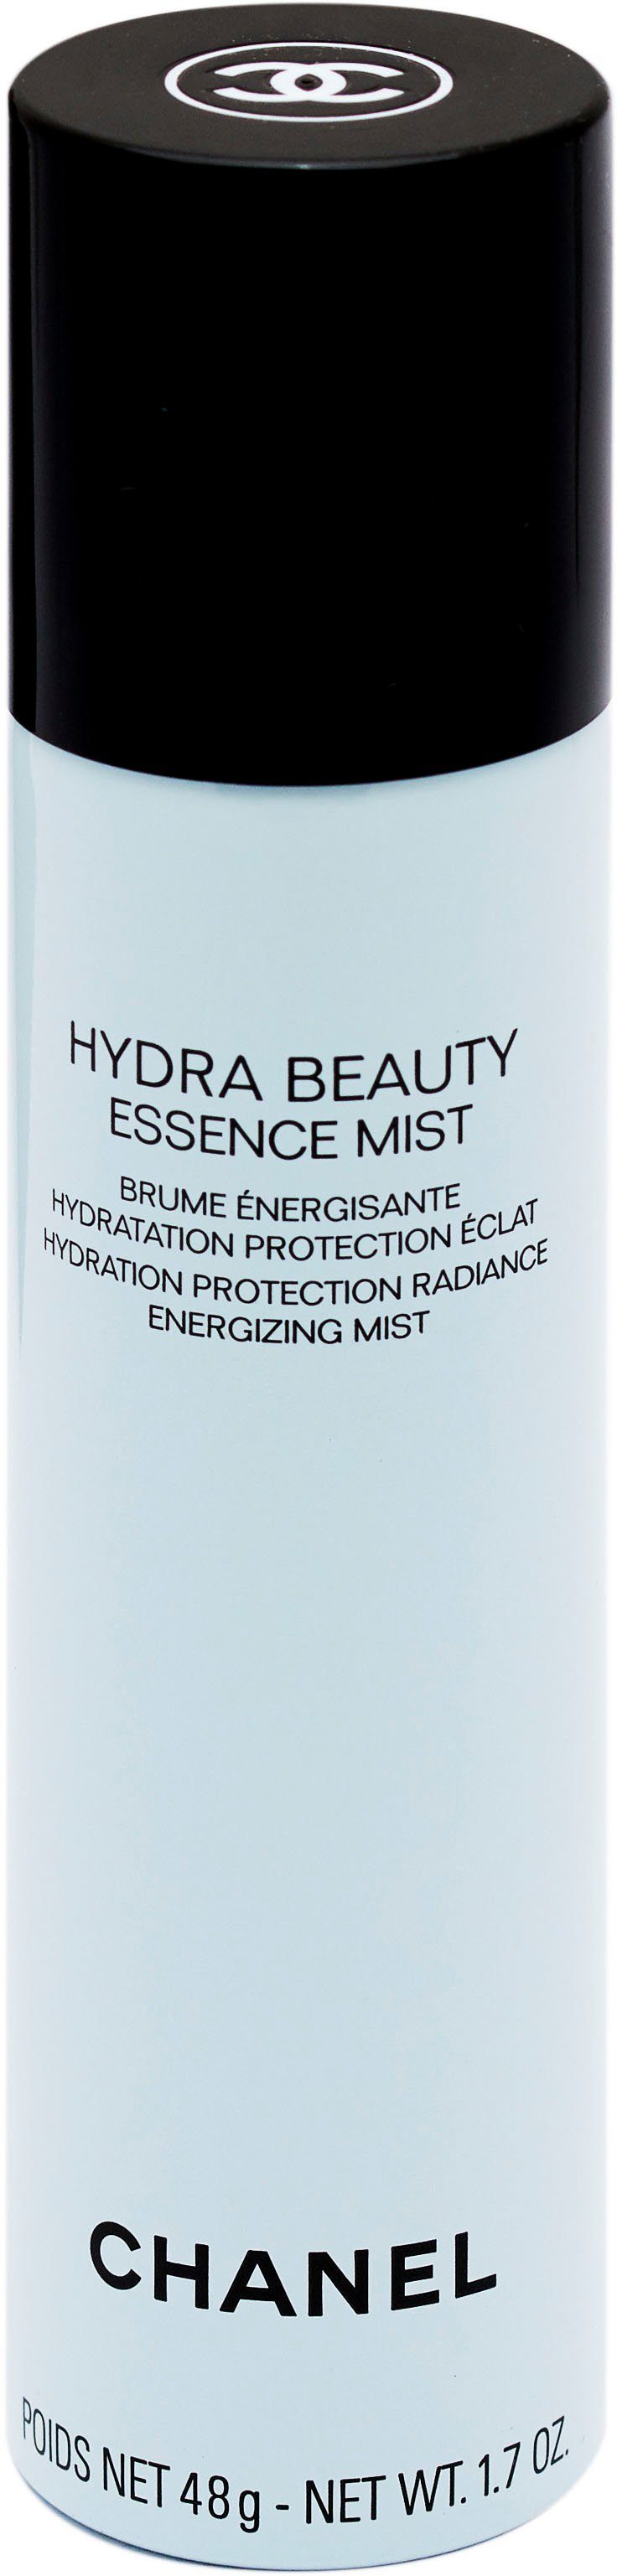 CHANEL Gesichtsspray Hydra Beauty Essence Mist, frei von  mikroplastik,allergen,silikon